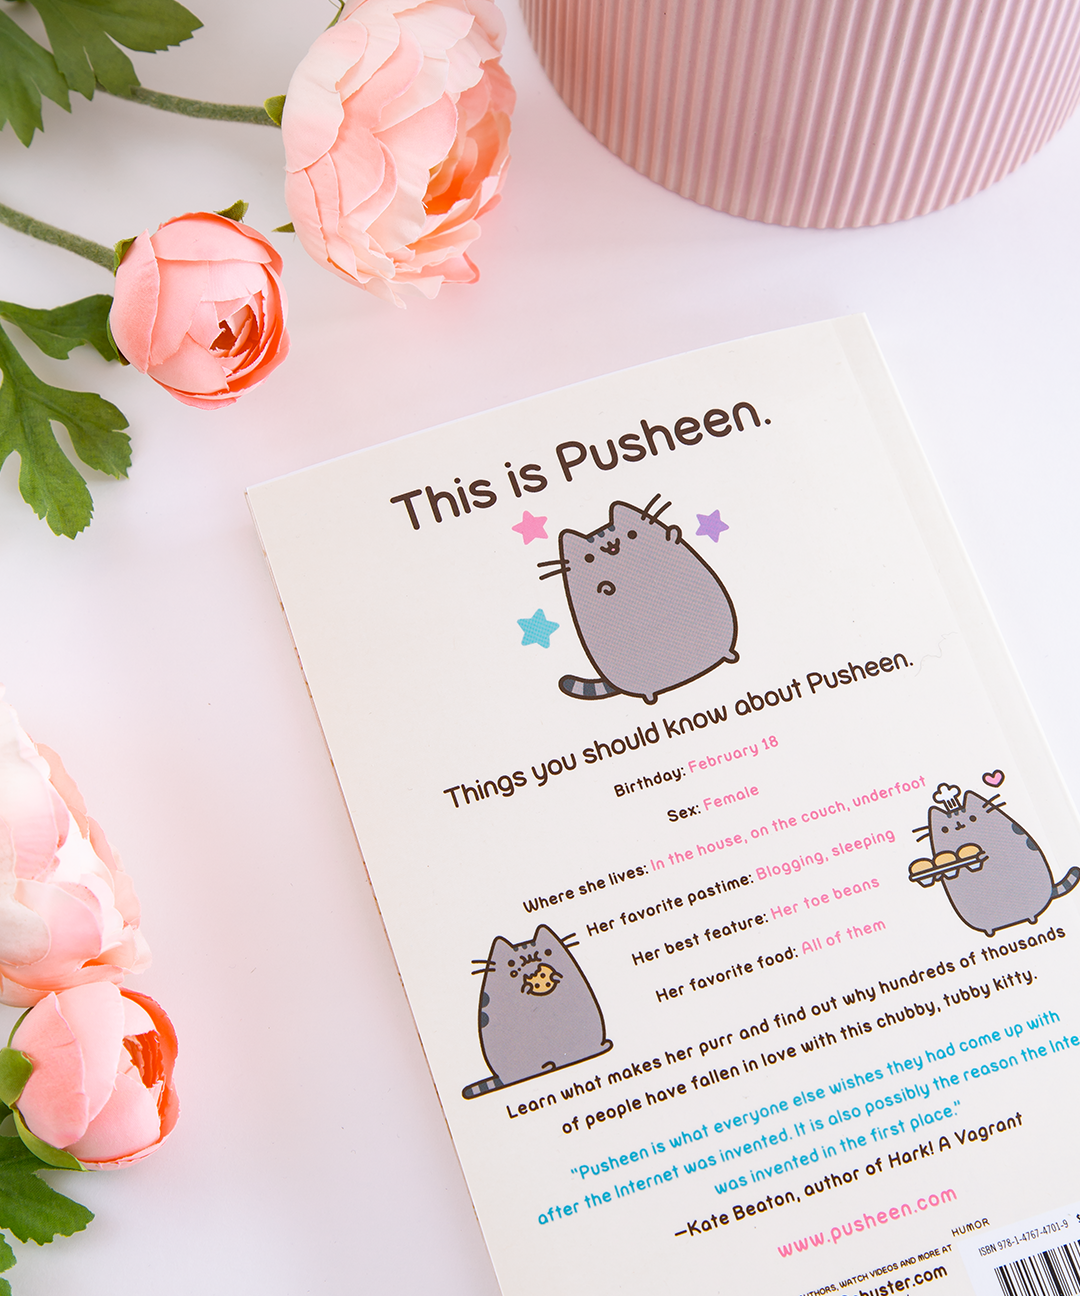 I Am Pusheen the Cat Paperback – Pusheen Shop